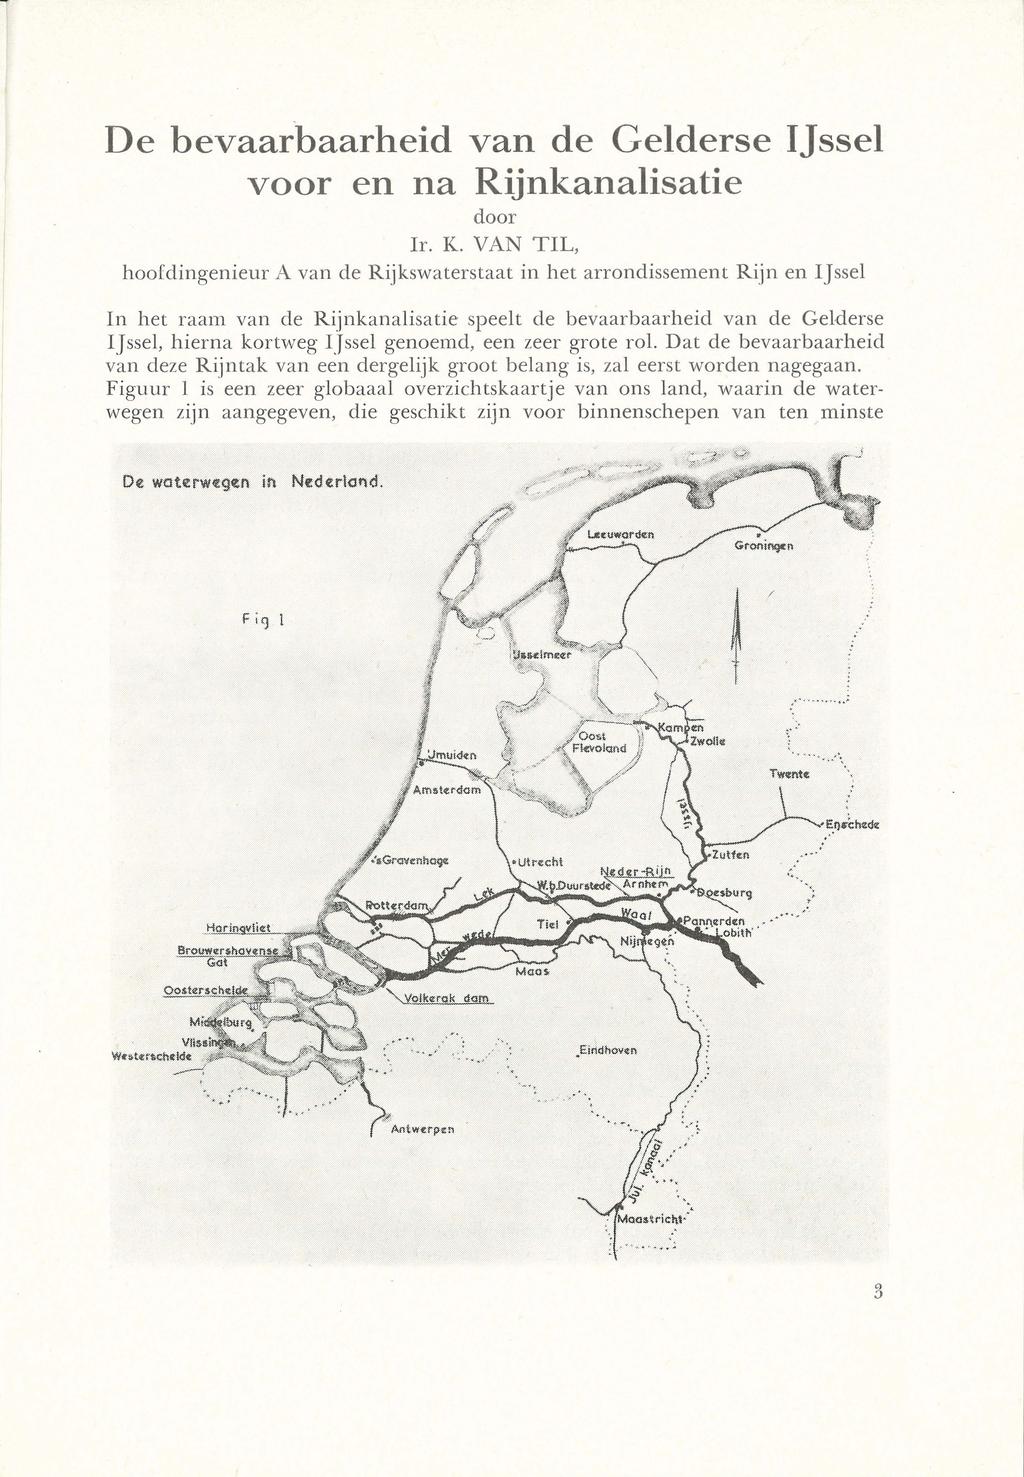 De bevaarbaarheid van de Gelderse IJssel voor en na Rijnkanalisatie door Ir. K.